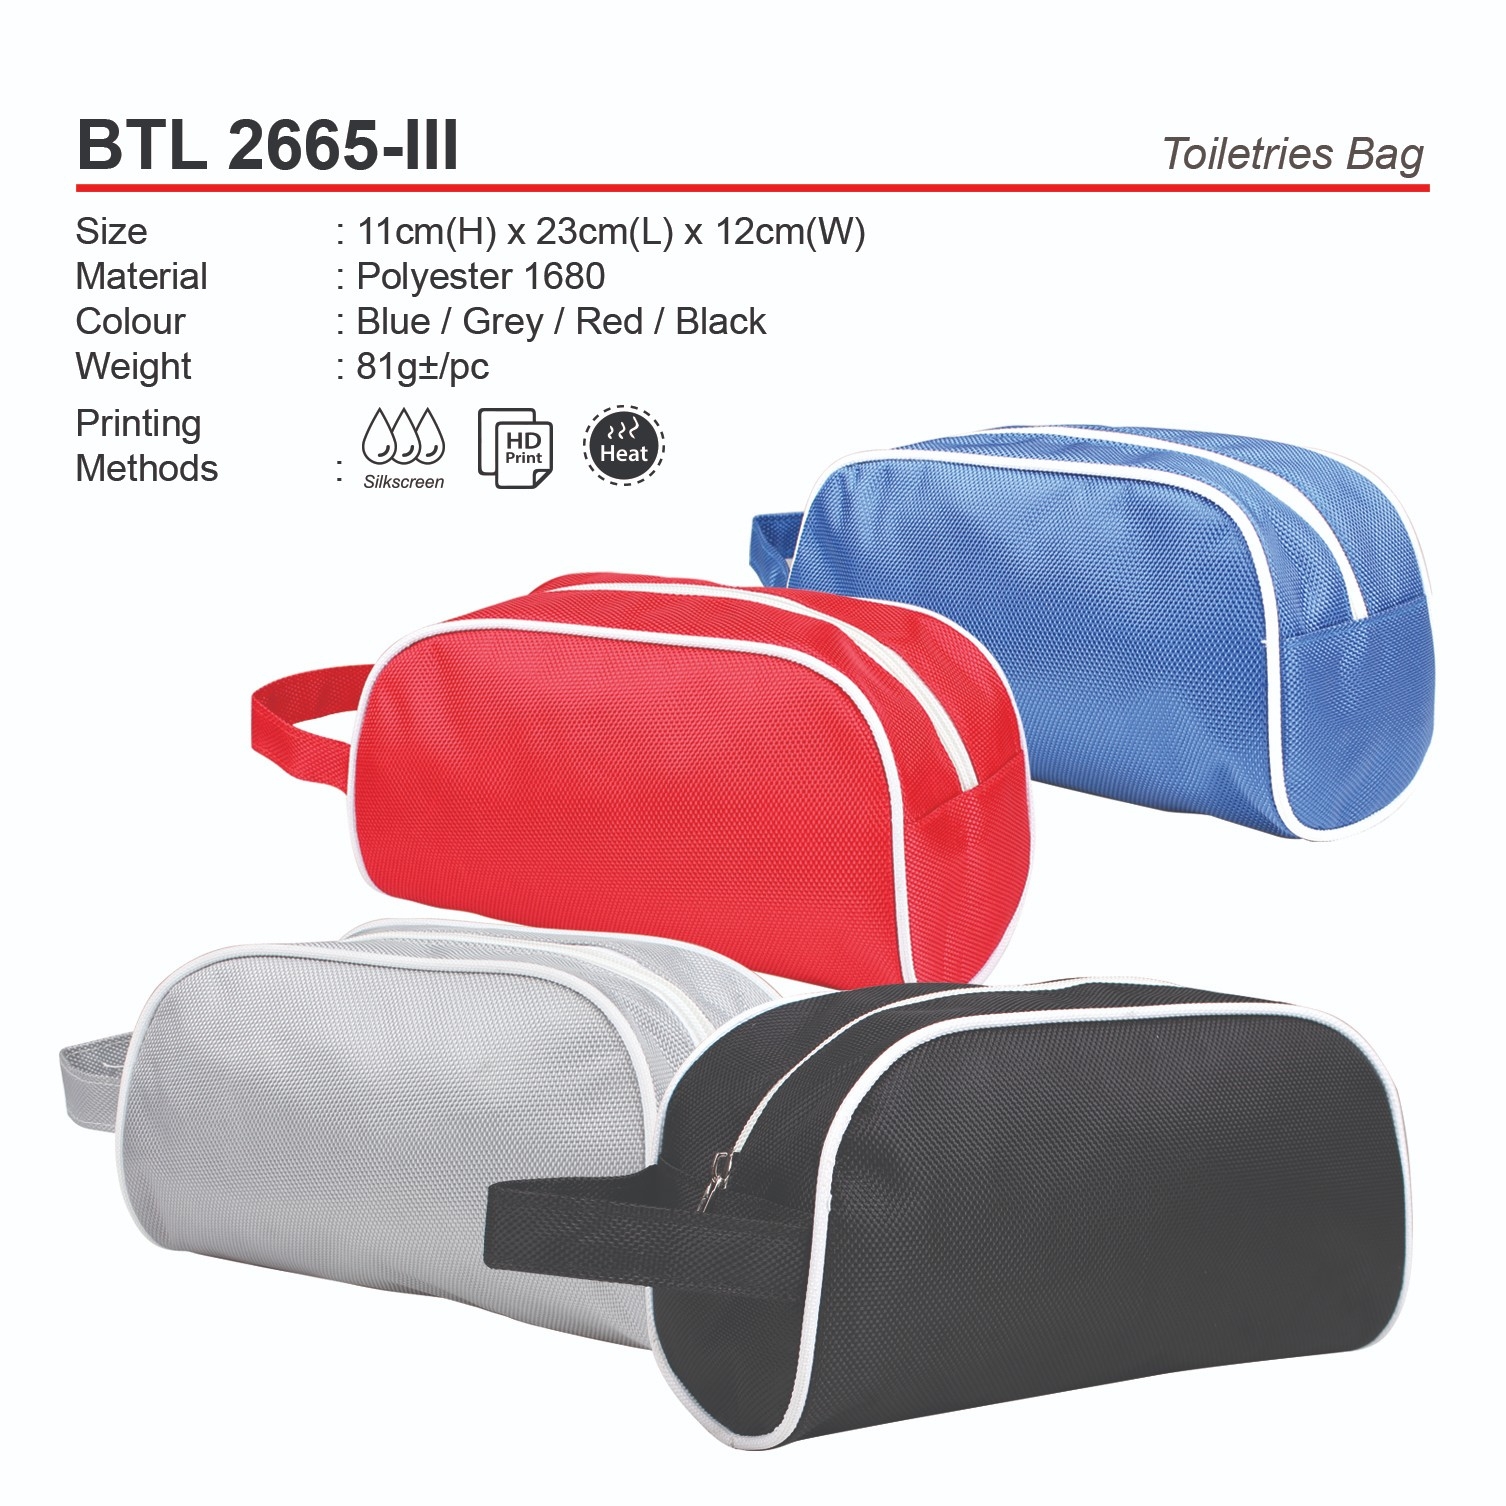 D*BTL2665-III Toiletries Bag (A)